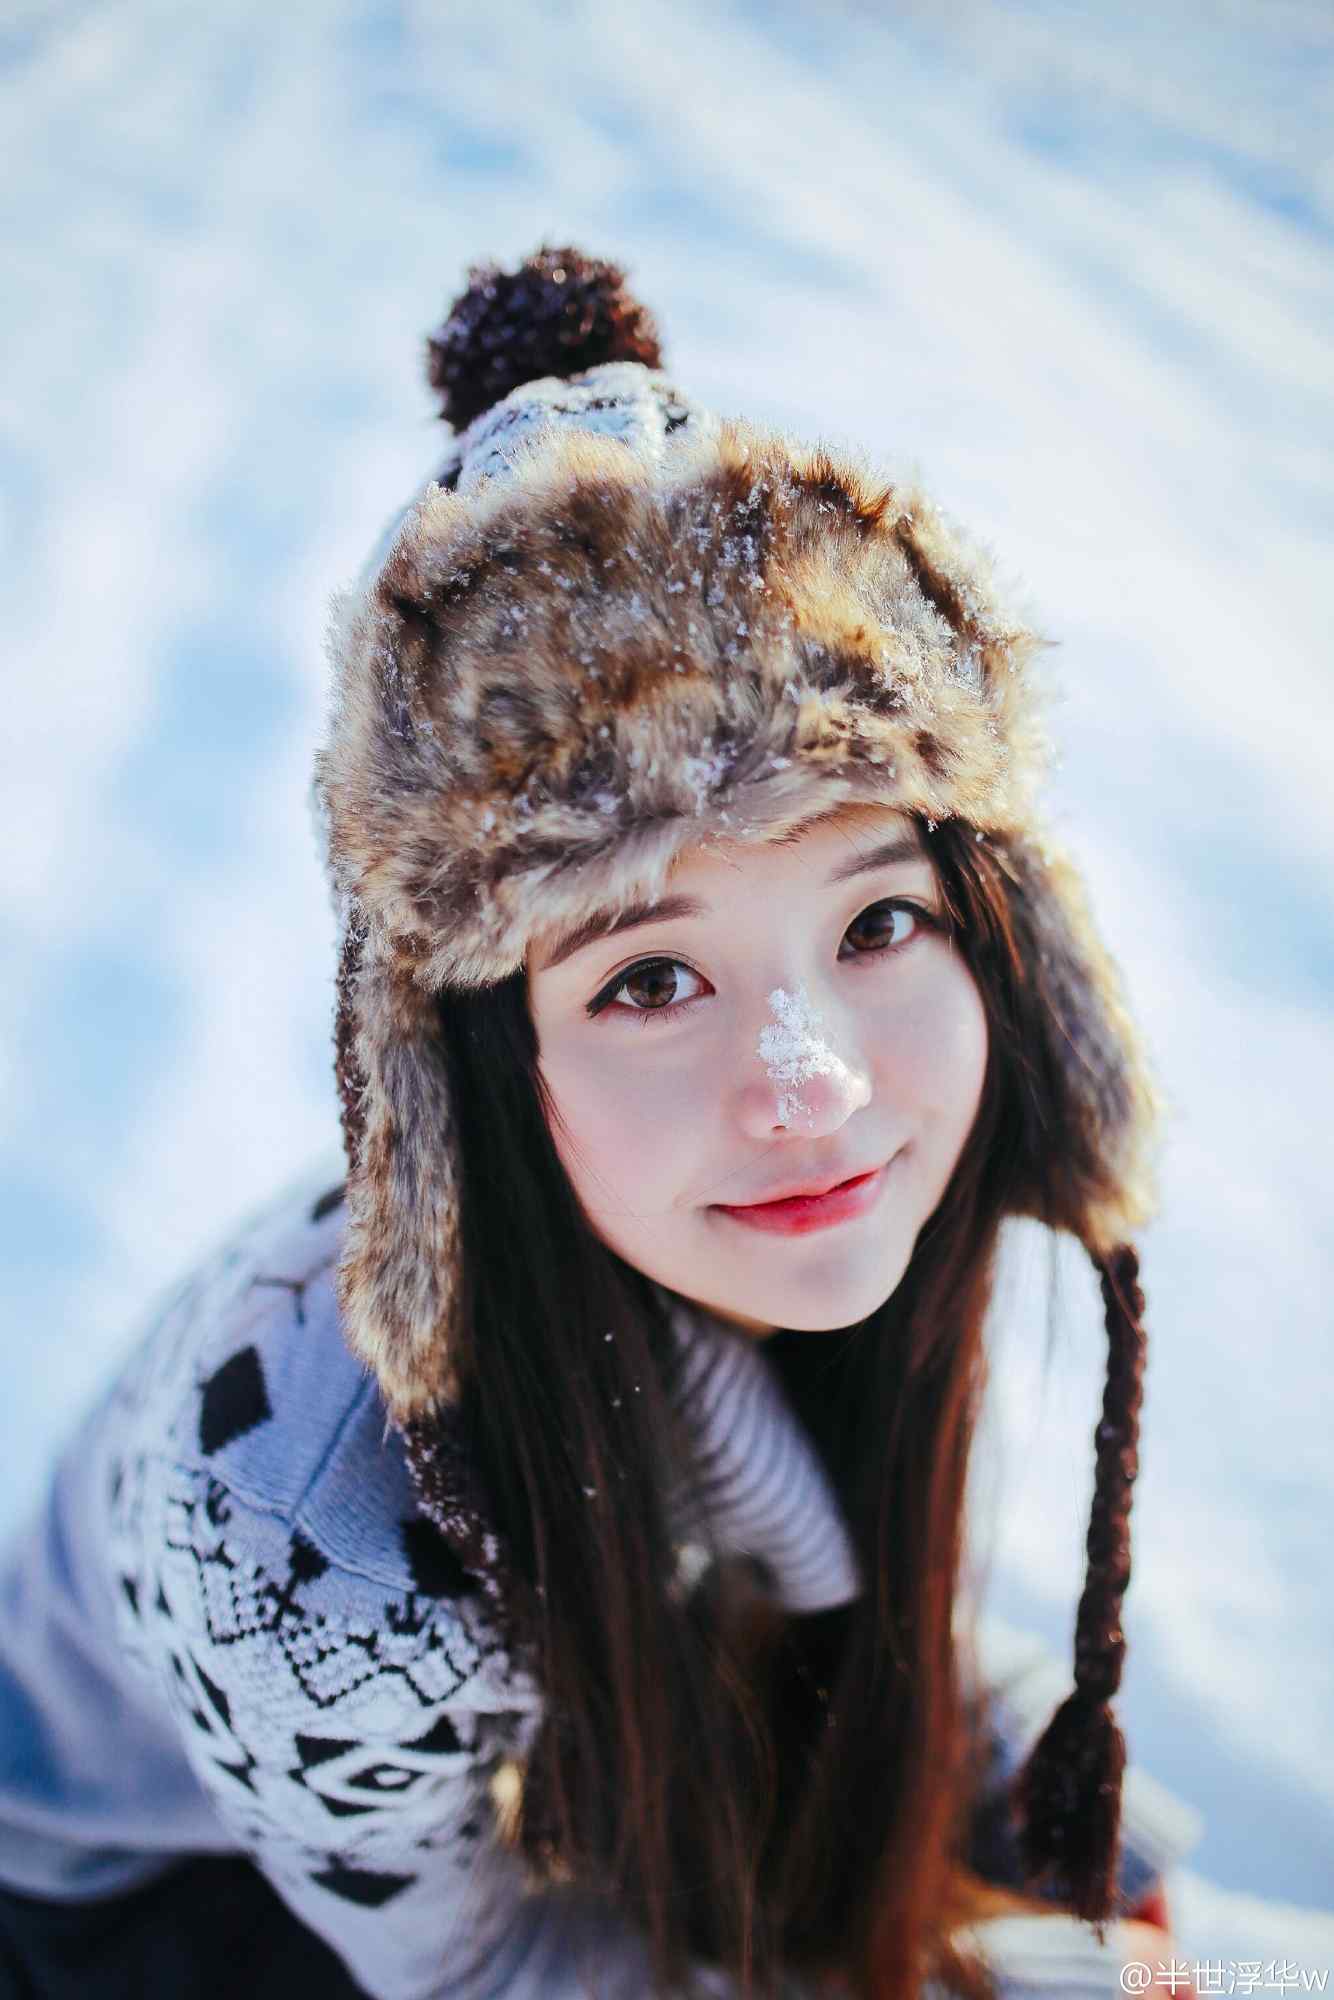 可爱的小美女雪景写真手机壁纸